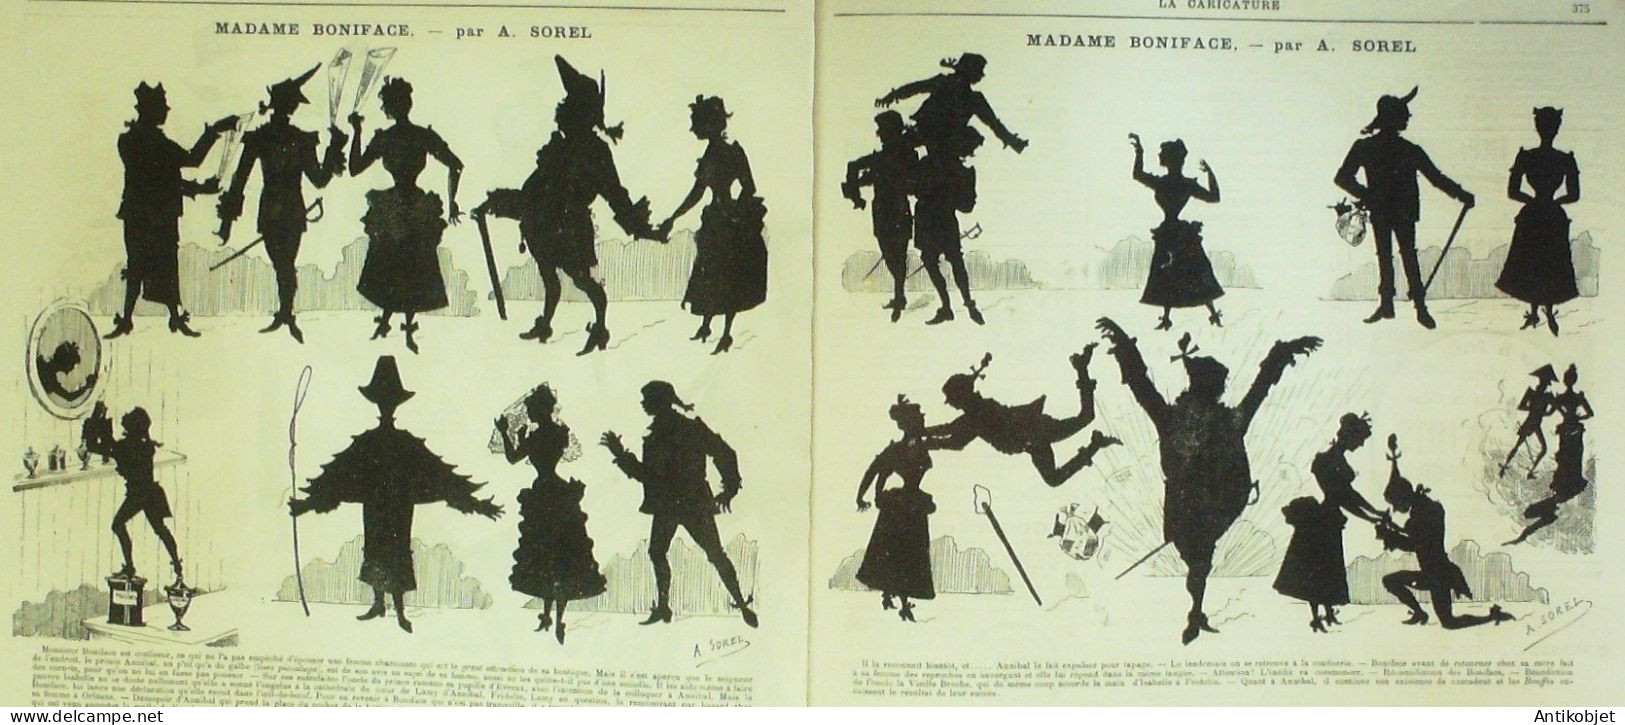 La Caricature 1883 N°204 Colonnel Ramollot Draner Modes Robida Boniface Sorel - Tijdschriften - Voor 1900